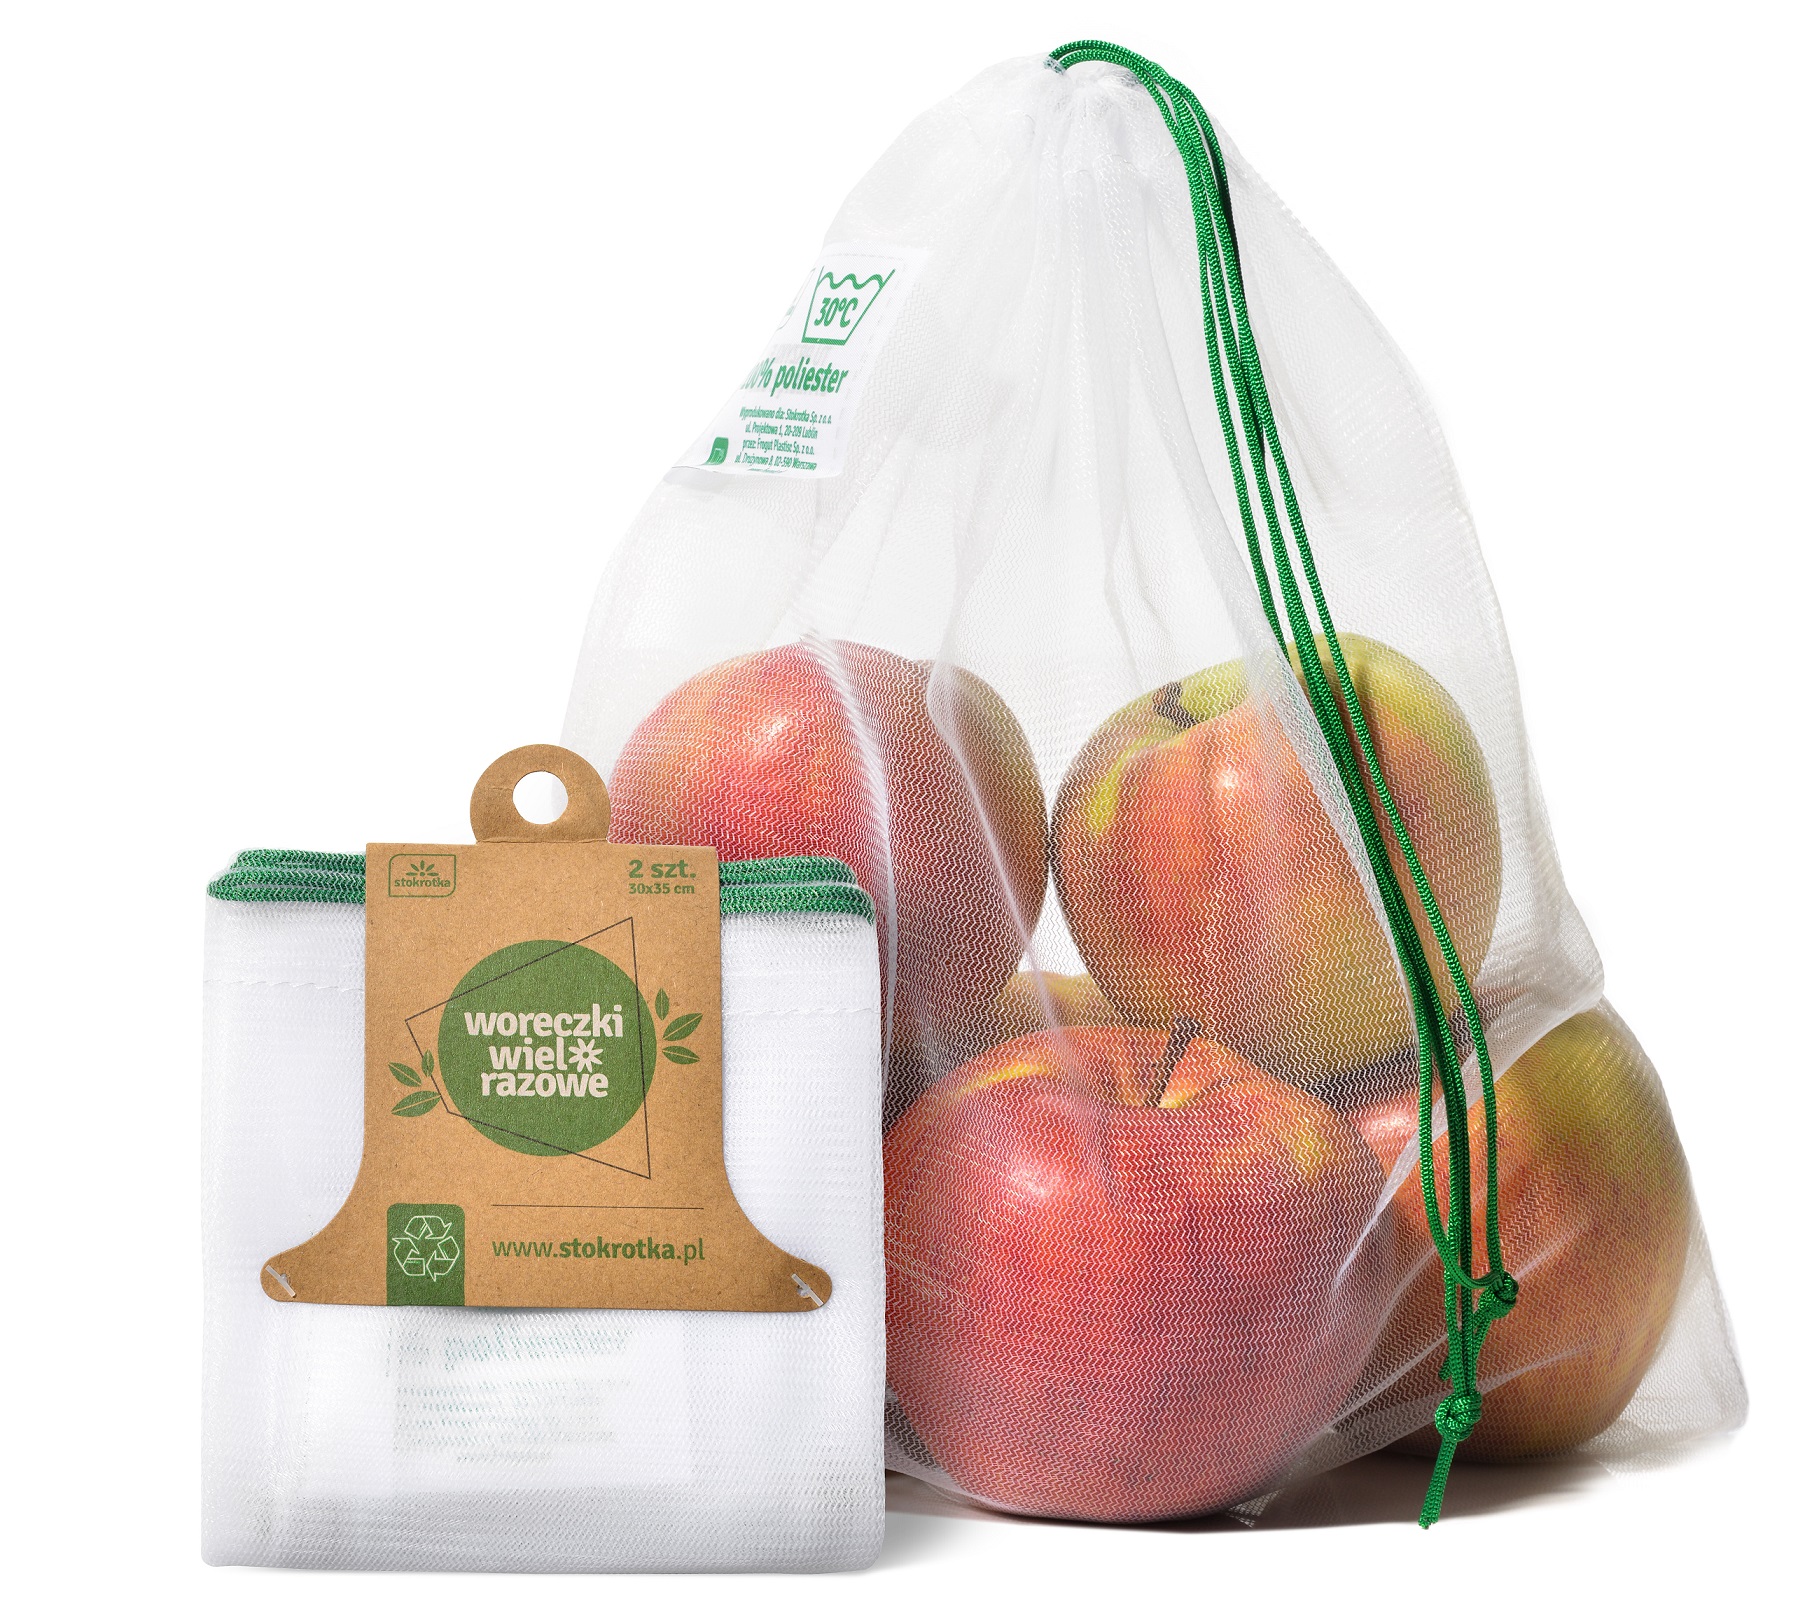 Stokrotka wprowadza ekologiczne torby na owoce i warzywa